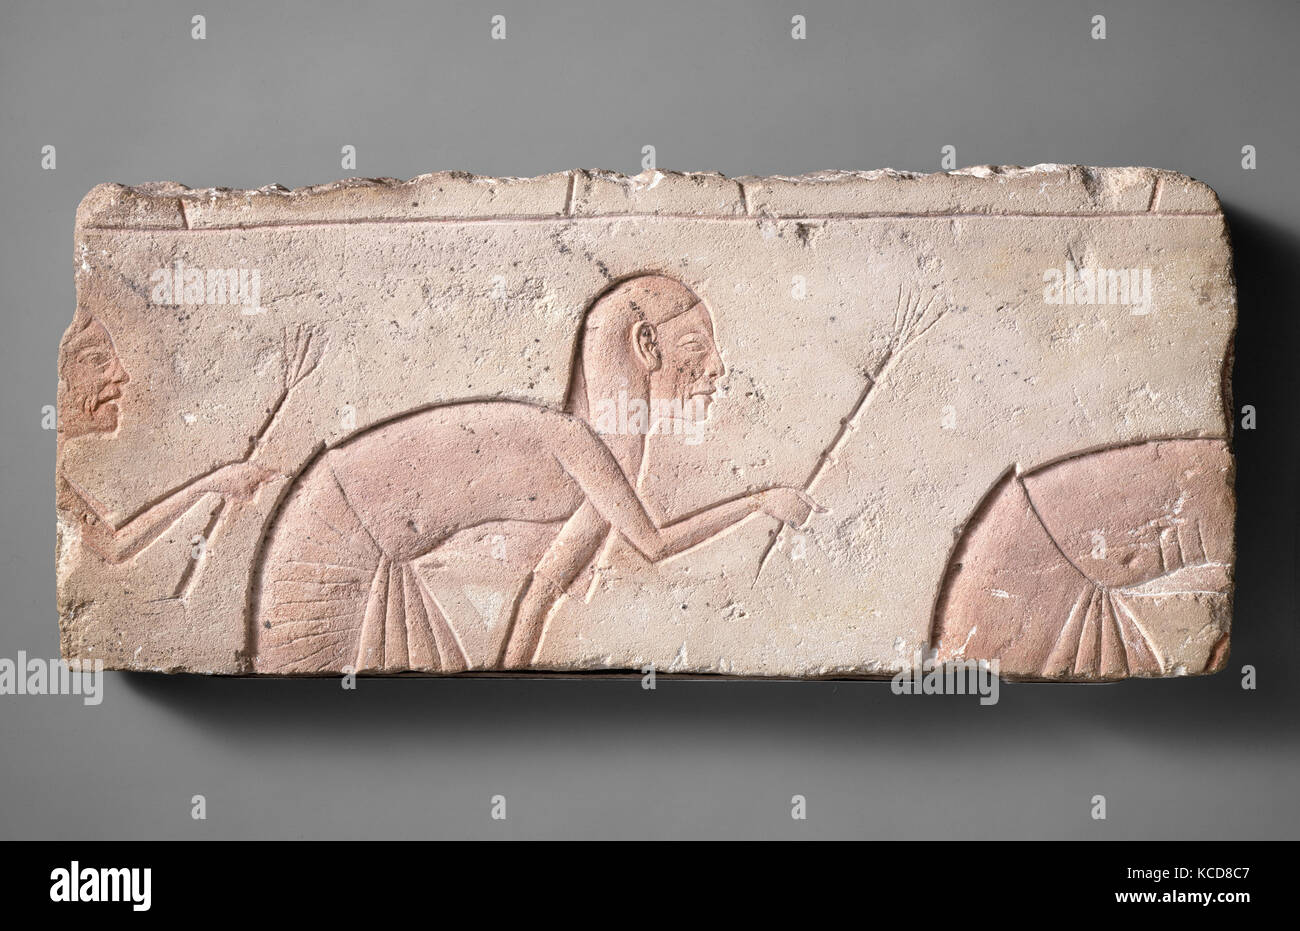 Verbeugung Telefonzentralen, Neues Reich, Amarna-zeit, Dynastie 18, Ca. 1353 - 1336 v. Chr., aus Ägypten; wahrscheinlich ab Mitte Ägypten Stockfoto